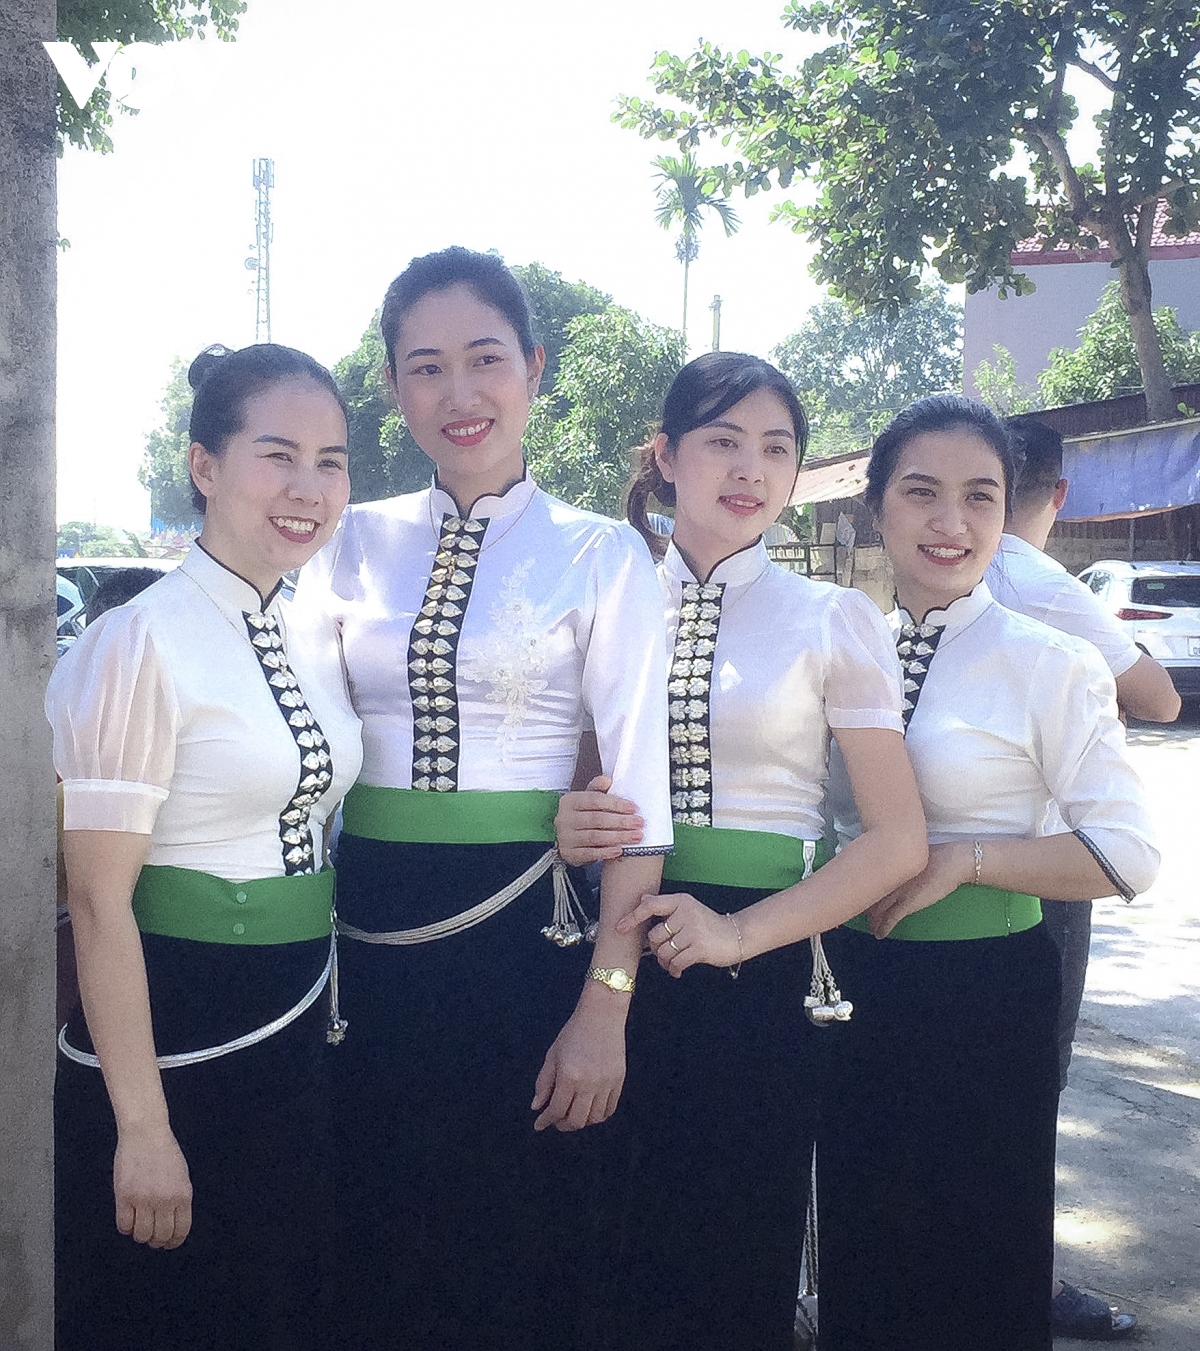 Hồn văn hóa dân tộc trên trang phục đồng bào Thái xứ Nghệ